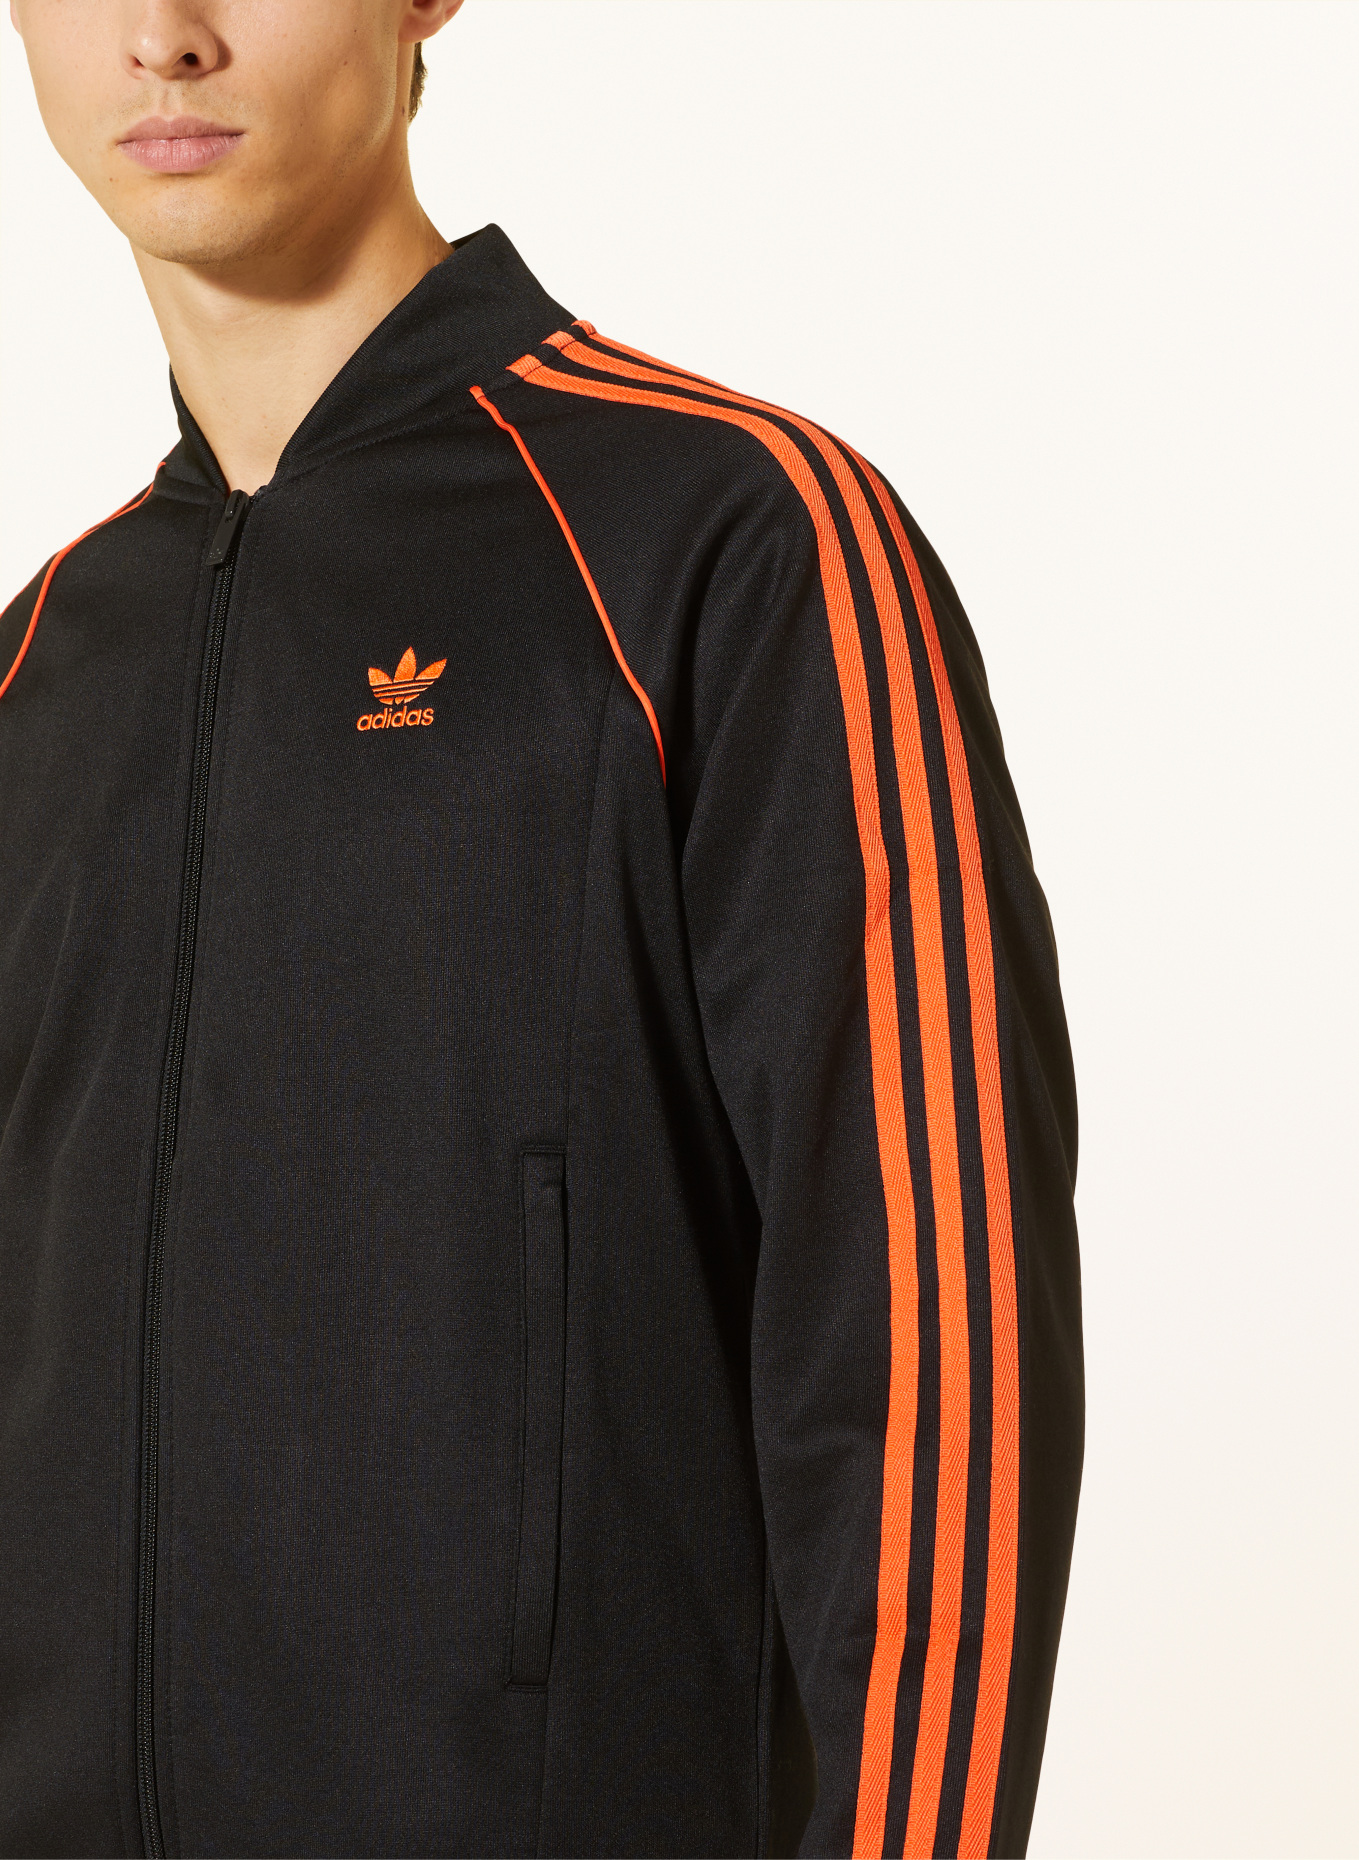 adidas Originals Trainingsjacke in schwarz/ ADICOLOR orange SST CLASSICS